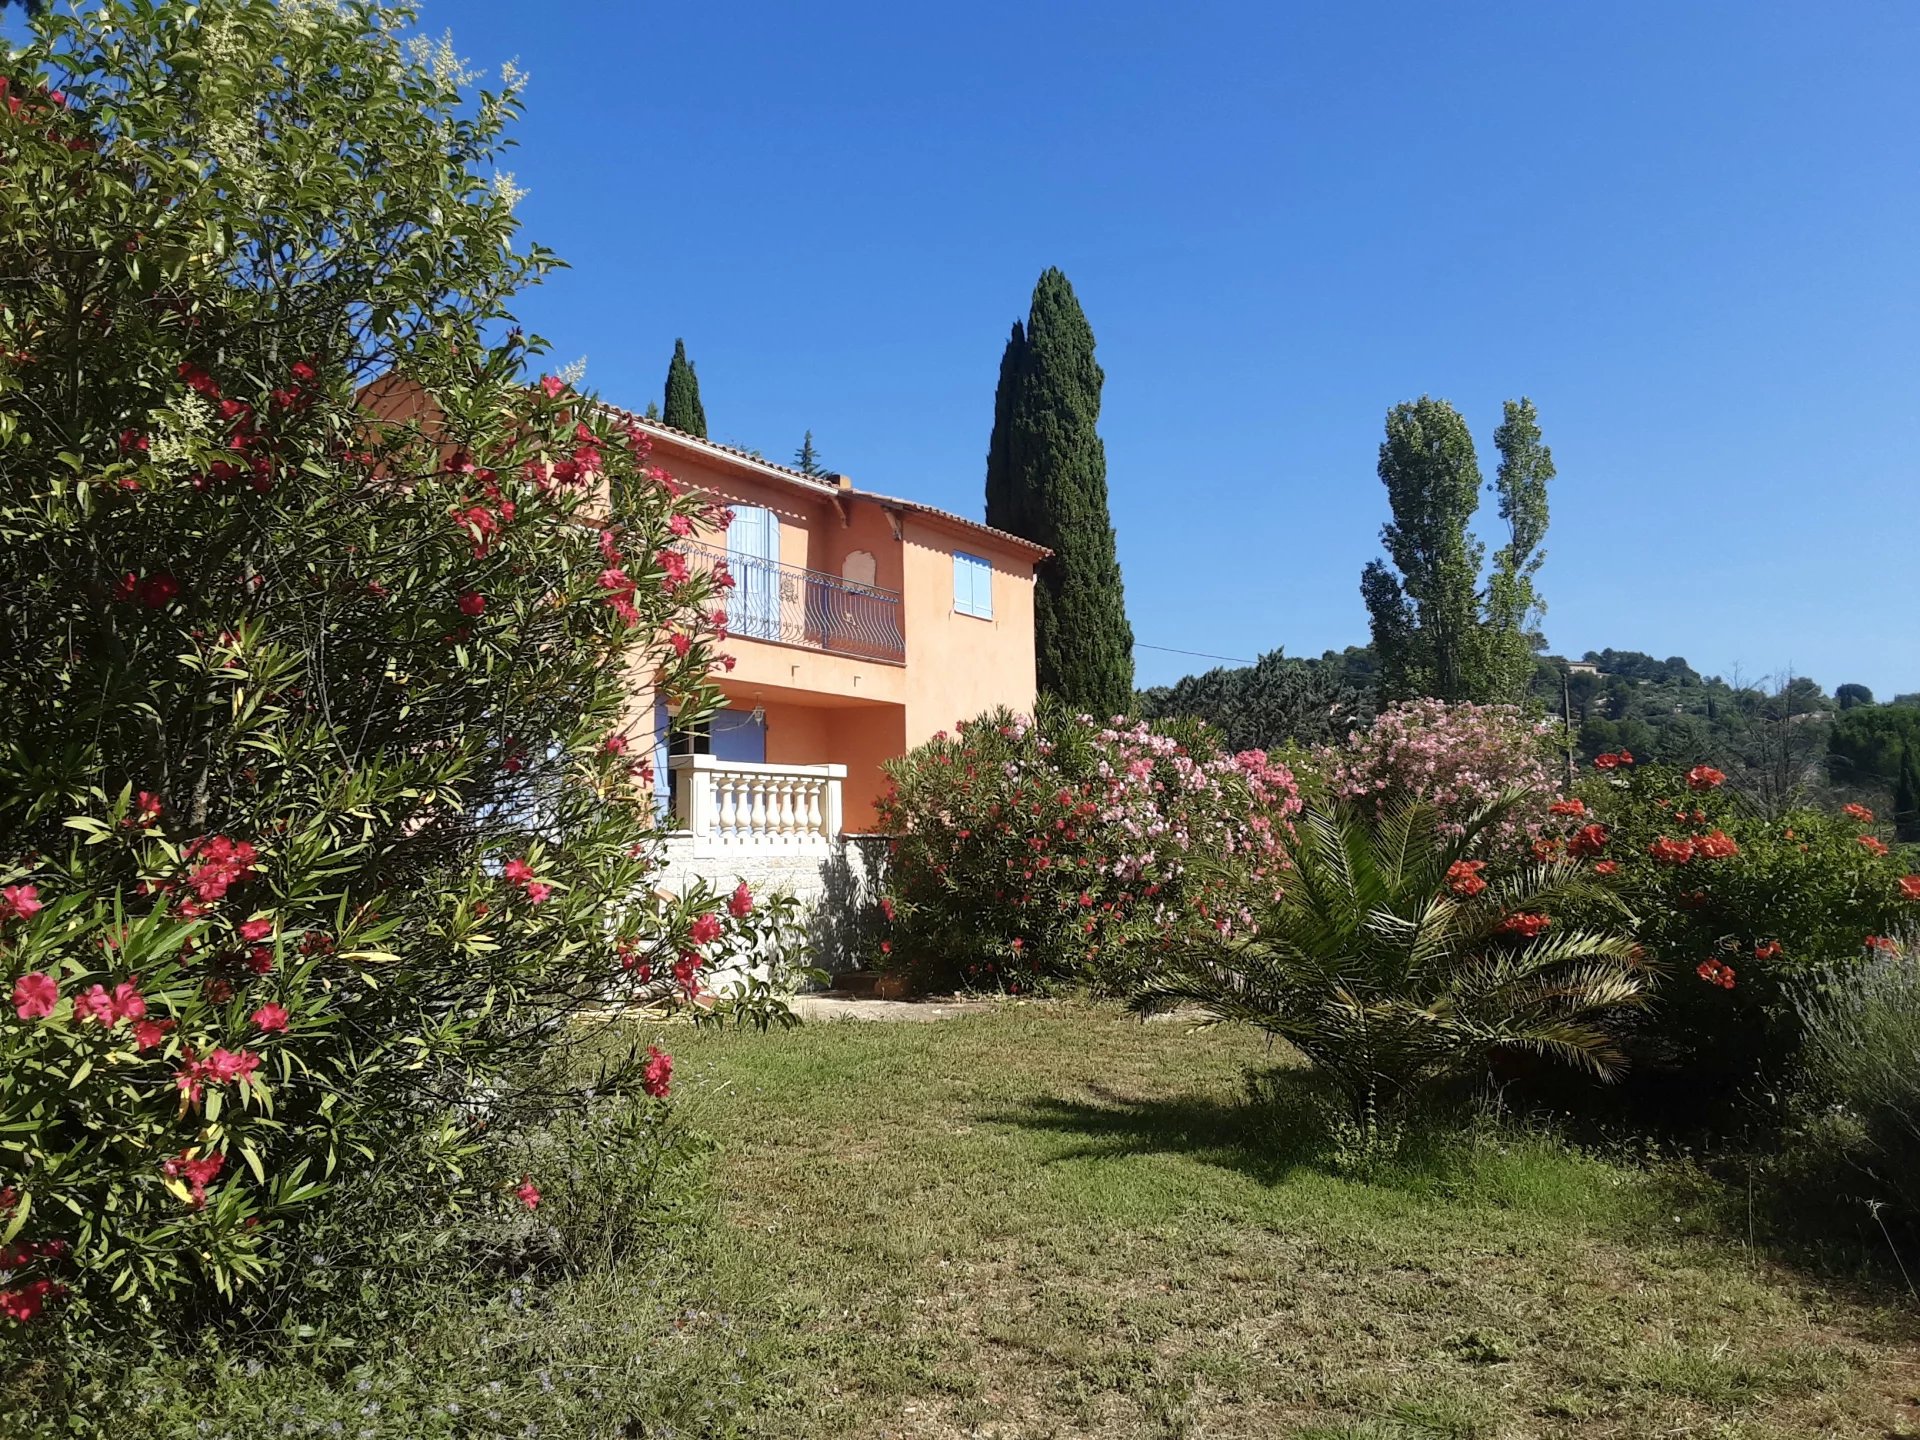 Villa met mooi uitzicht in rustige buurt in Cotignac.